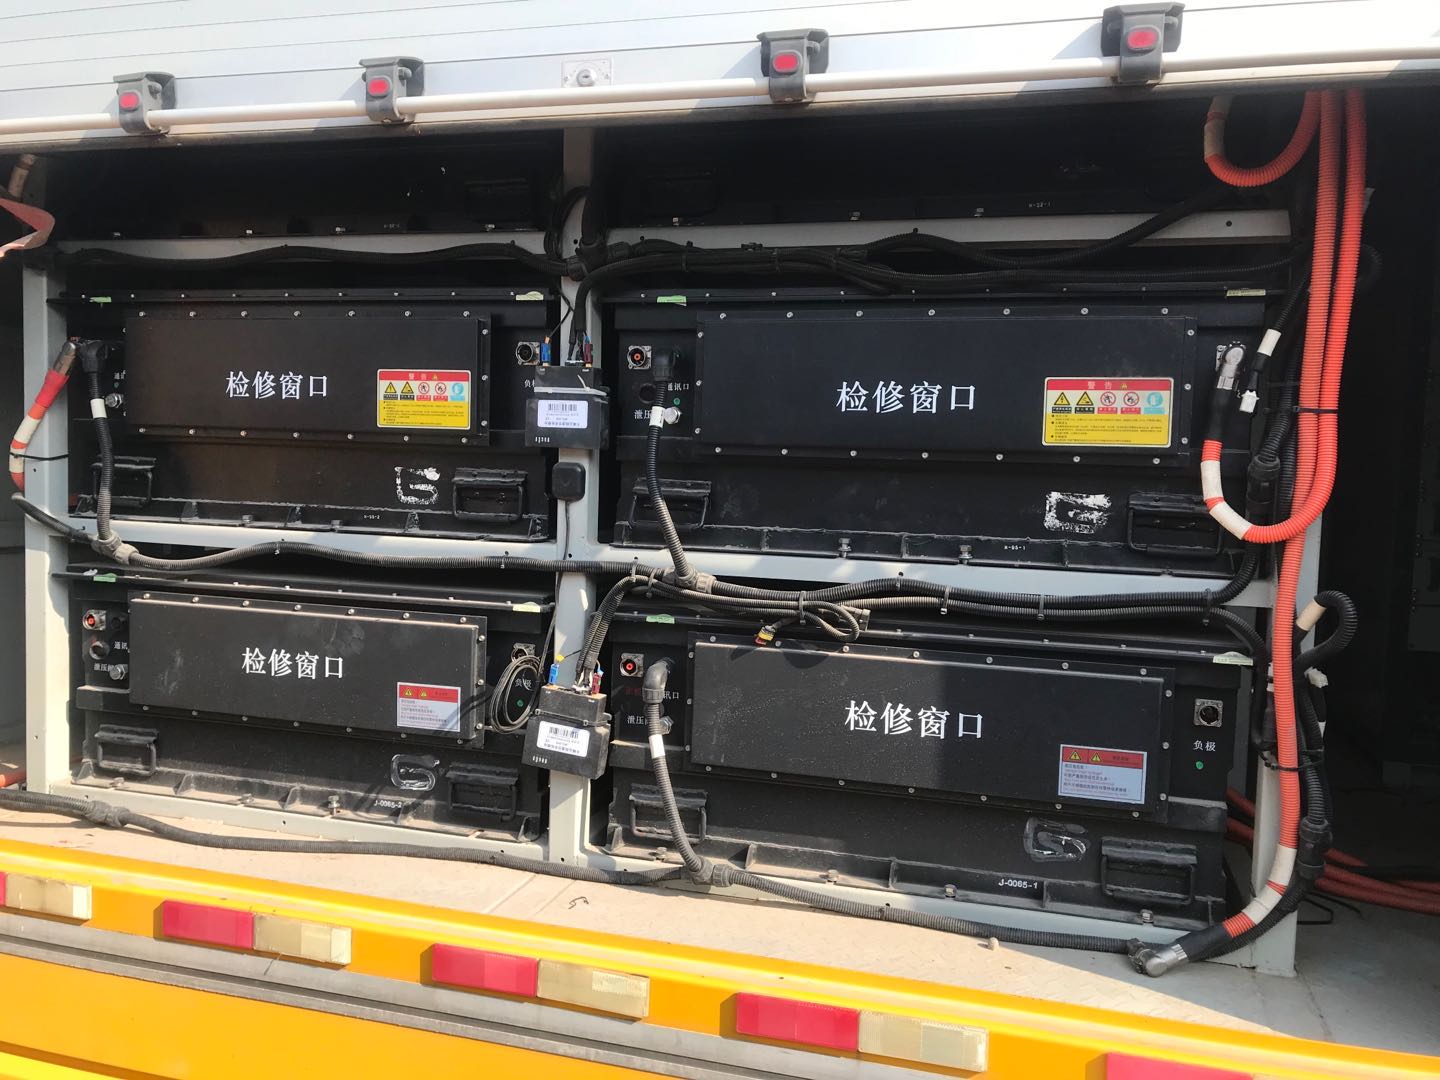 油电混合汽车动力锂电池解决方案-惠州泓胜隆科技有限公司